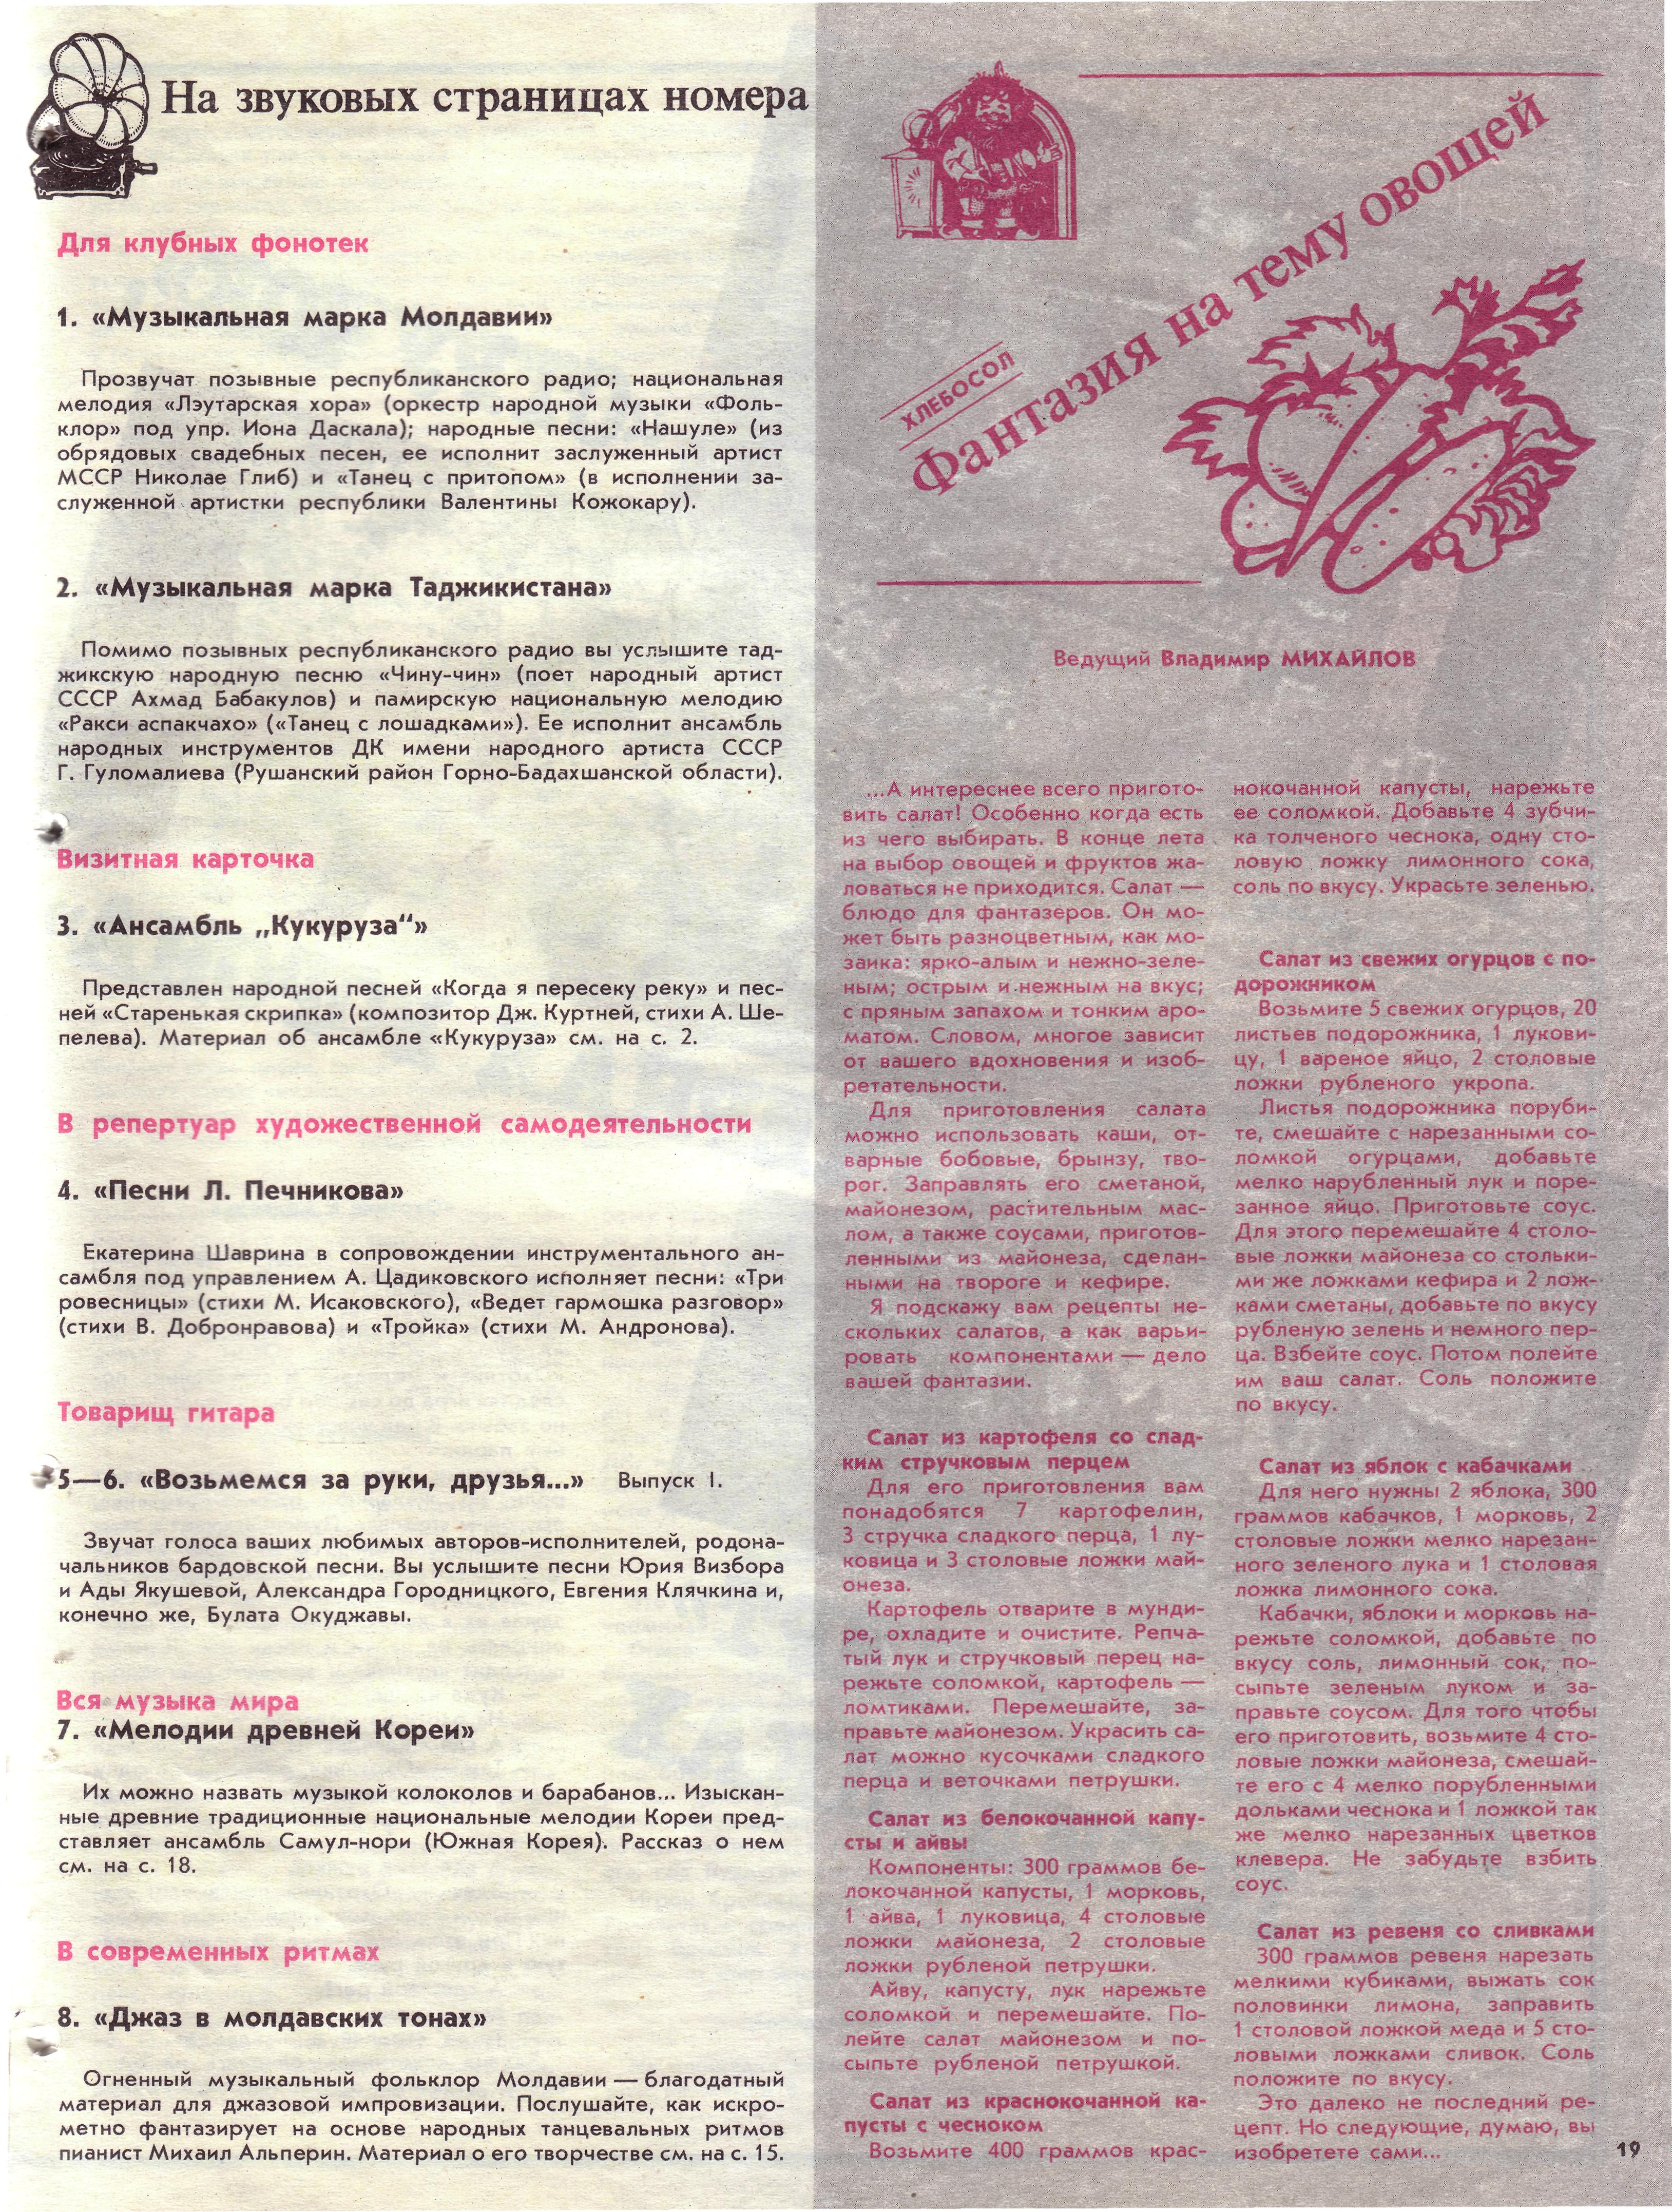 Народное творчество 1989 №08